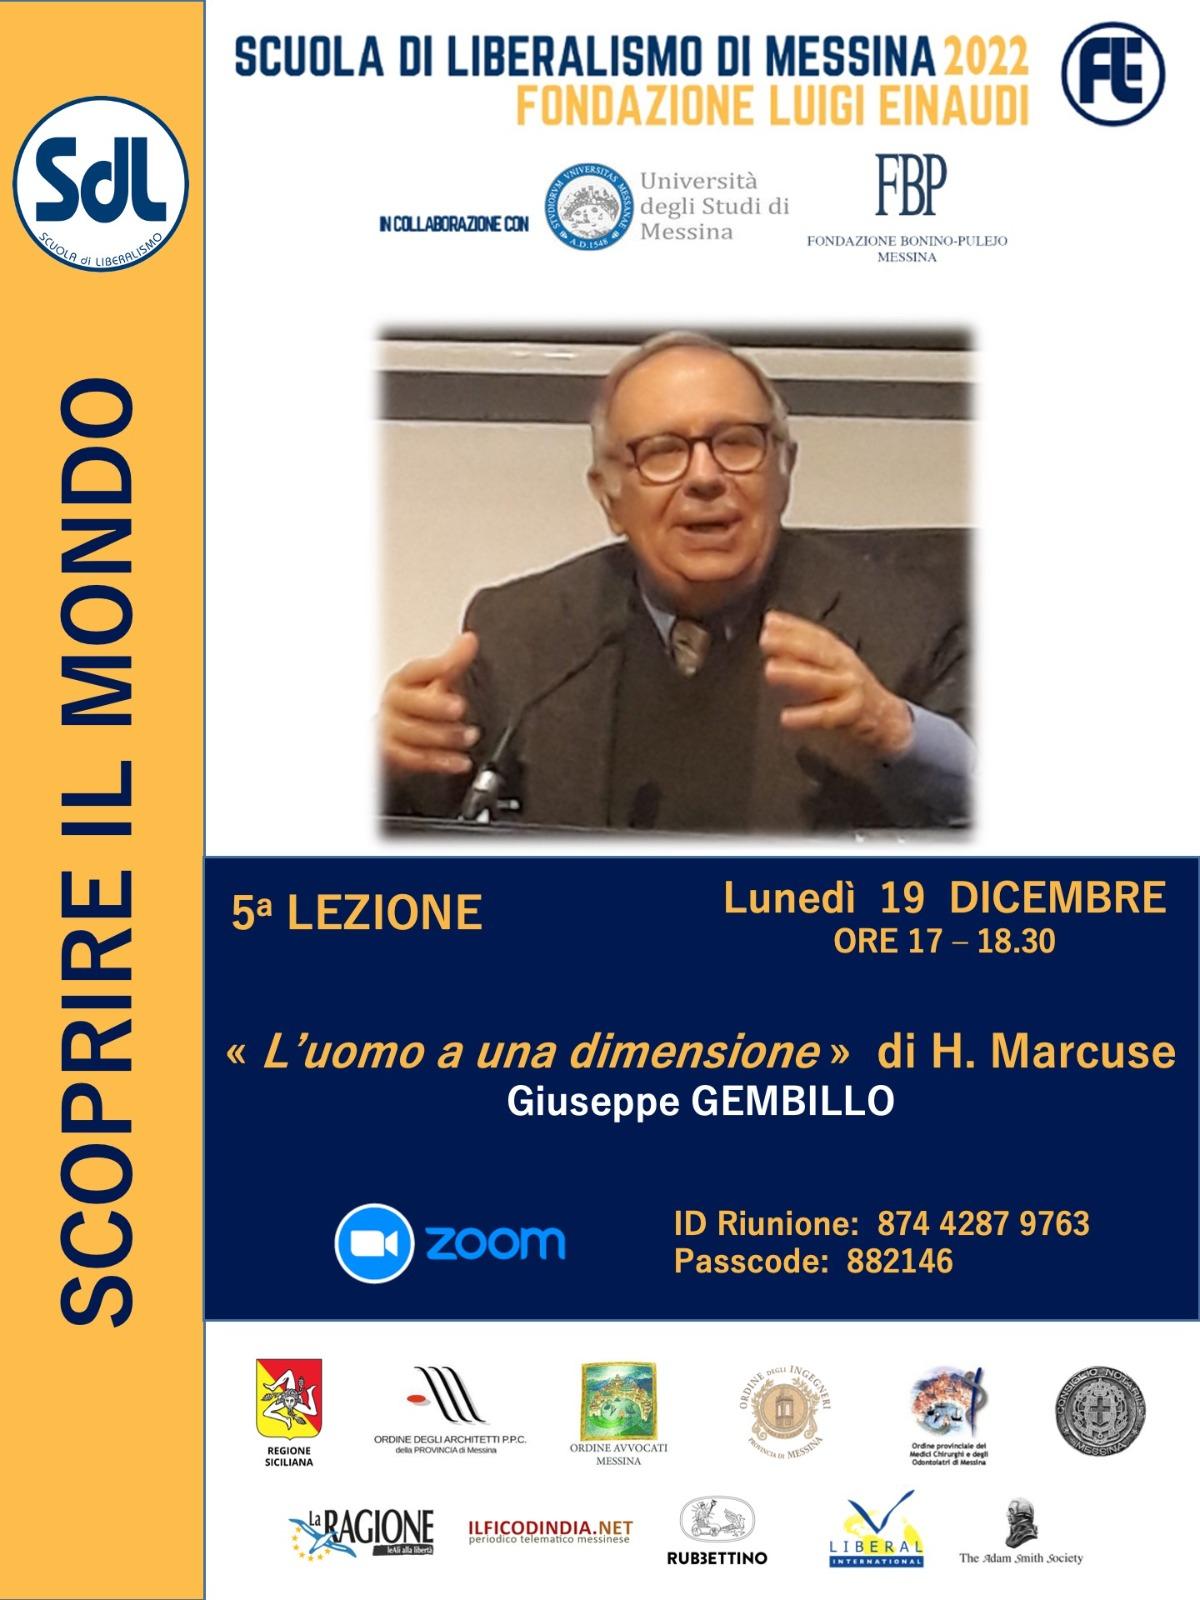 Scuola di Liberalismo 2022 – Messina: lezione di Giuseppe Gembillo sul tema “L’uomo a una dimensione”